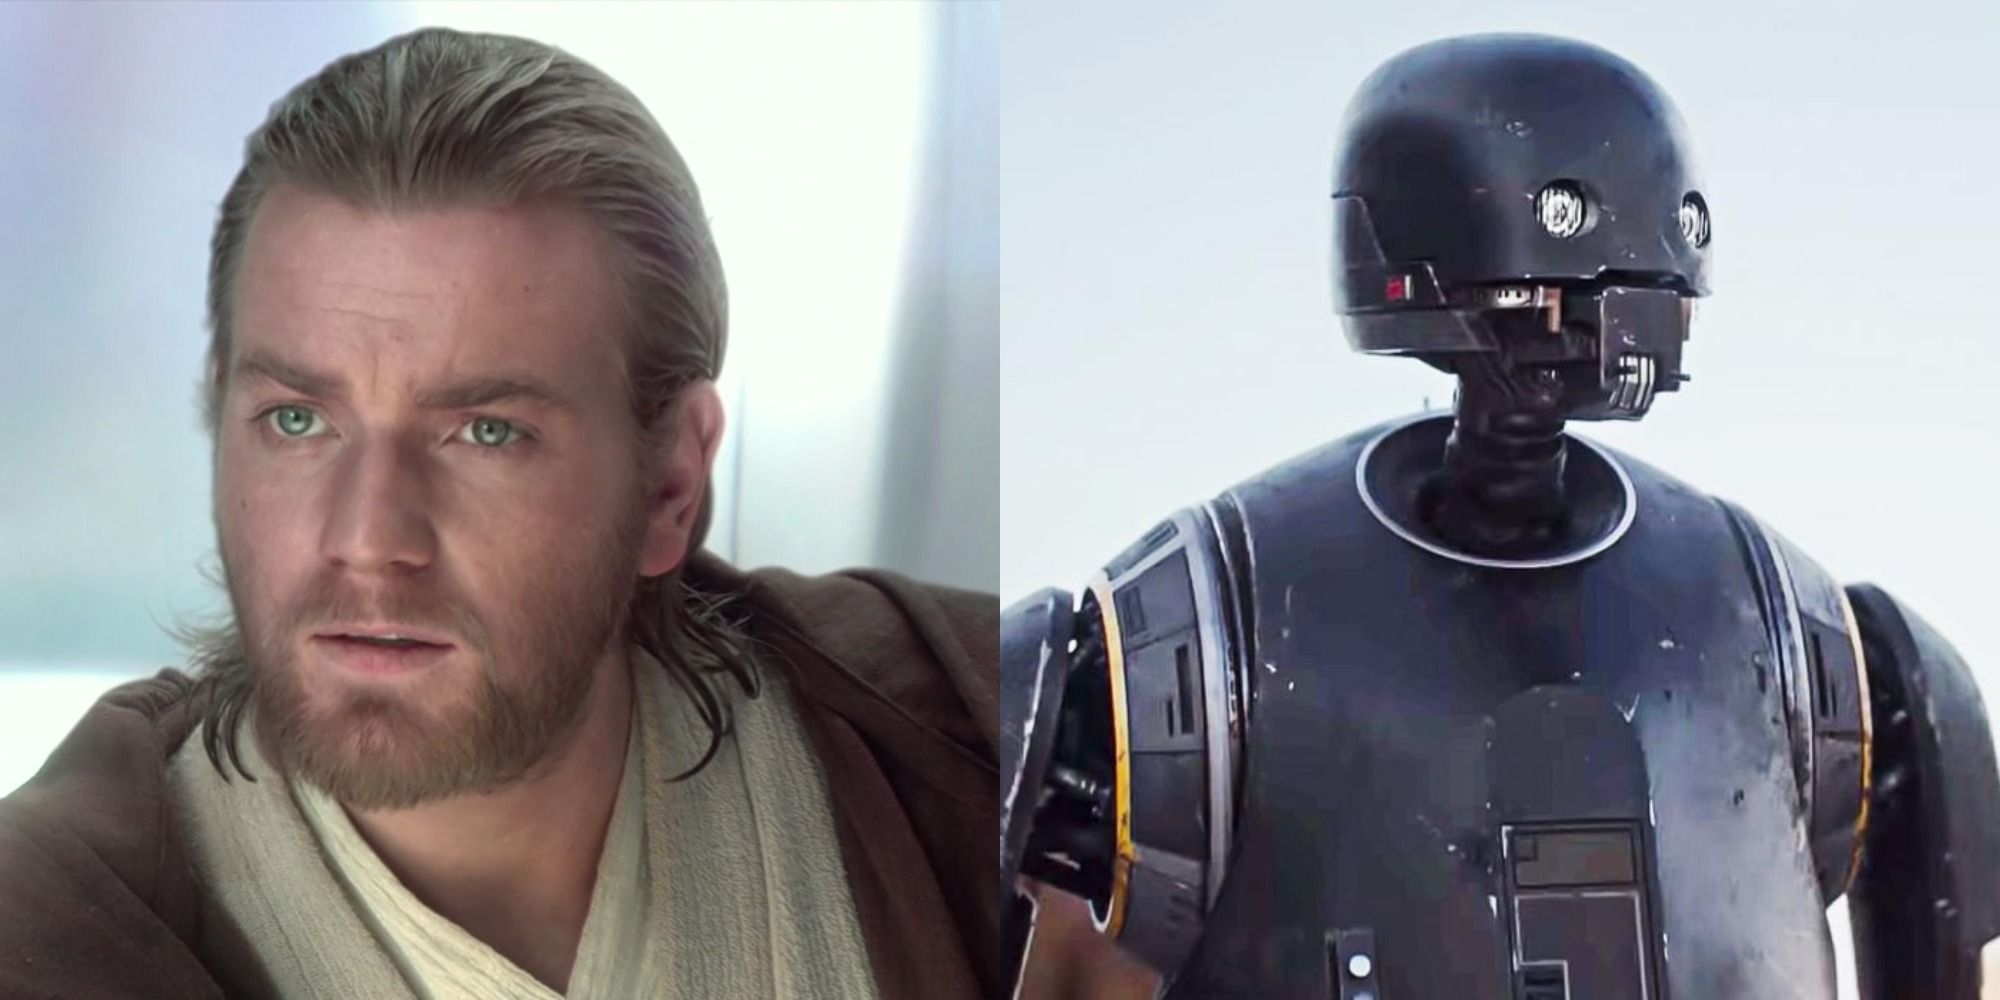 Obi-Wan Kenobi and K-2SO in Star Wars